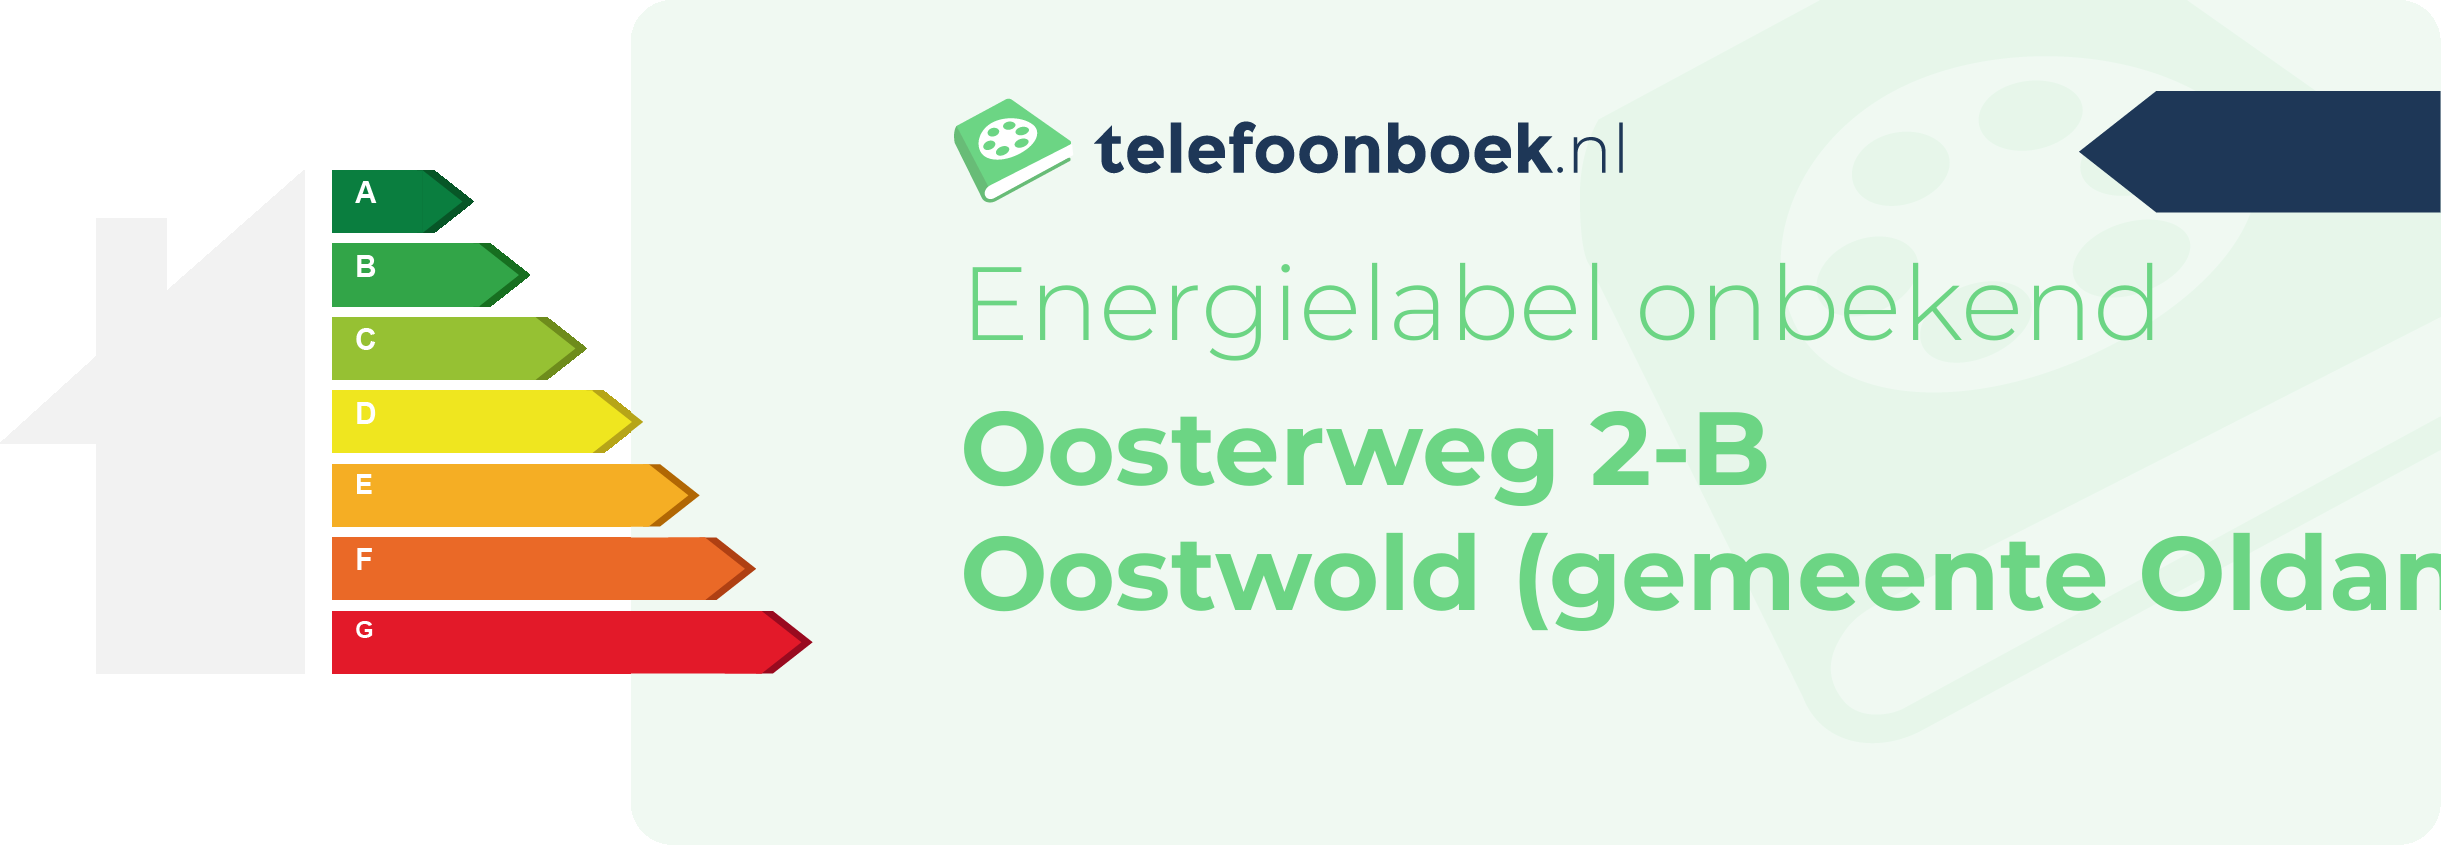 Energielabel Oosterweg 2-B Oostwold (gemeente Oldambt Groningen)